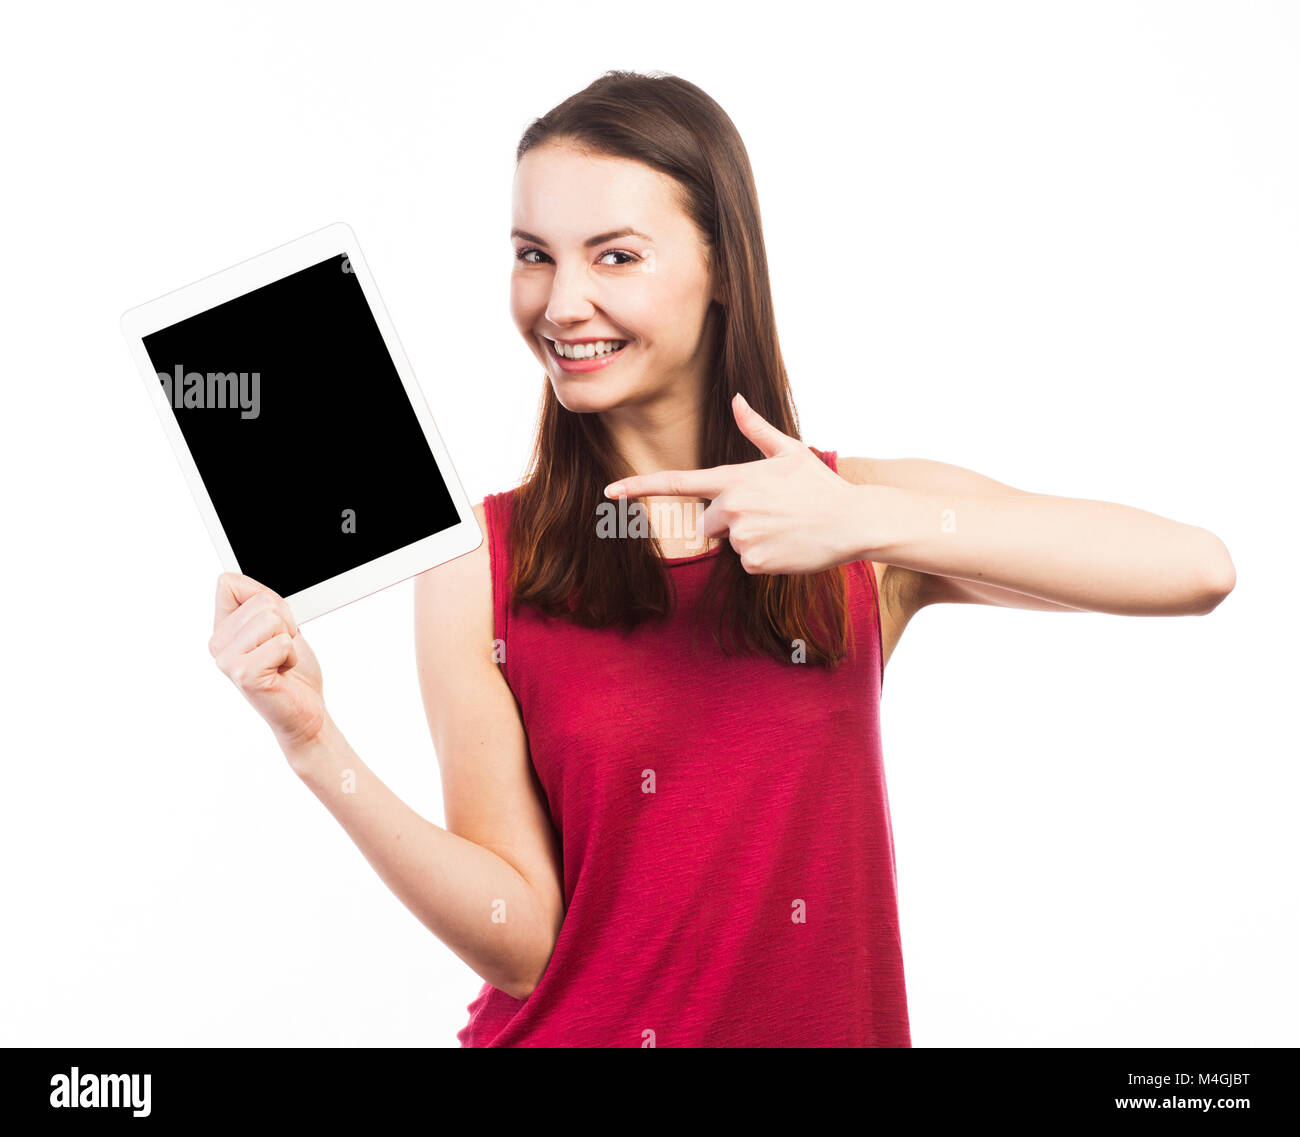 Donna allegra holding e mostrando la schermata vuota di una tavoletta elettronica, isolato su bianco Foto Stock